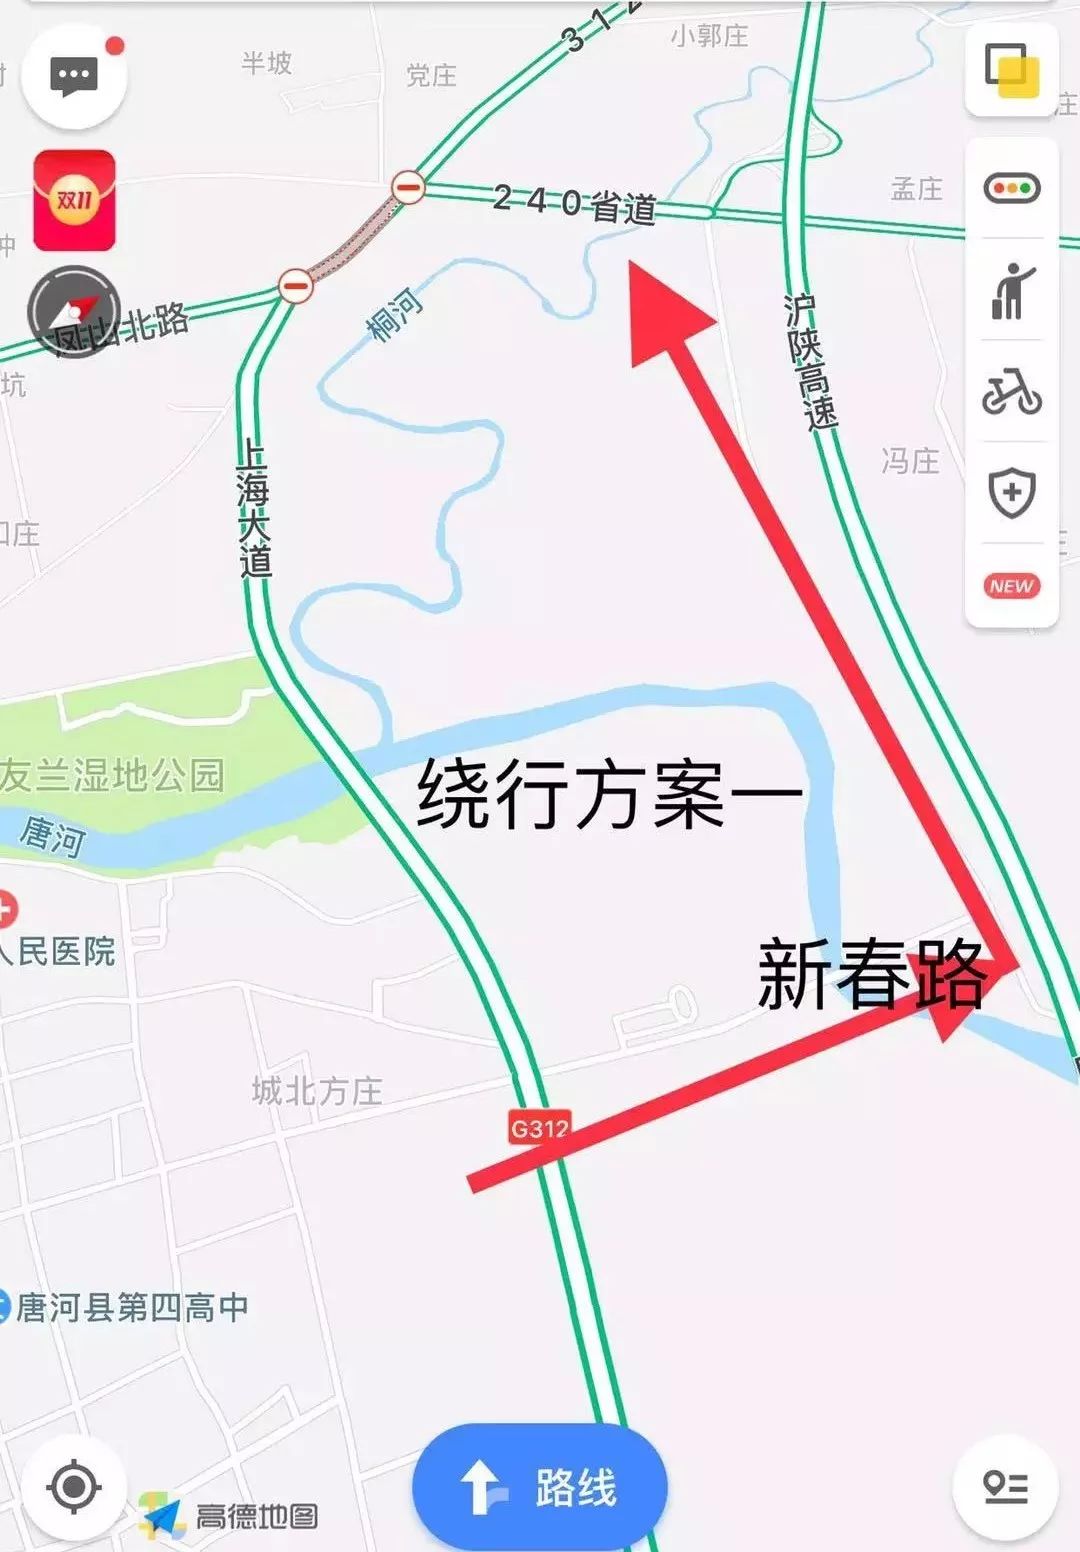 扩散唐河县这个路段全幅封闭施工大家请注意绕行